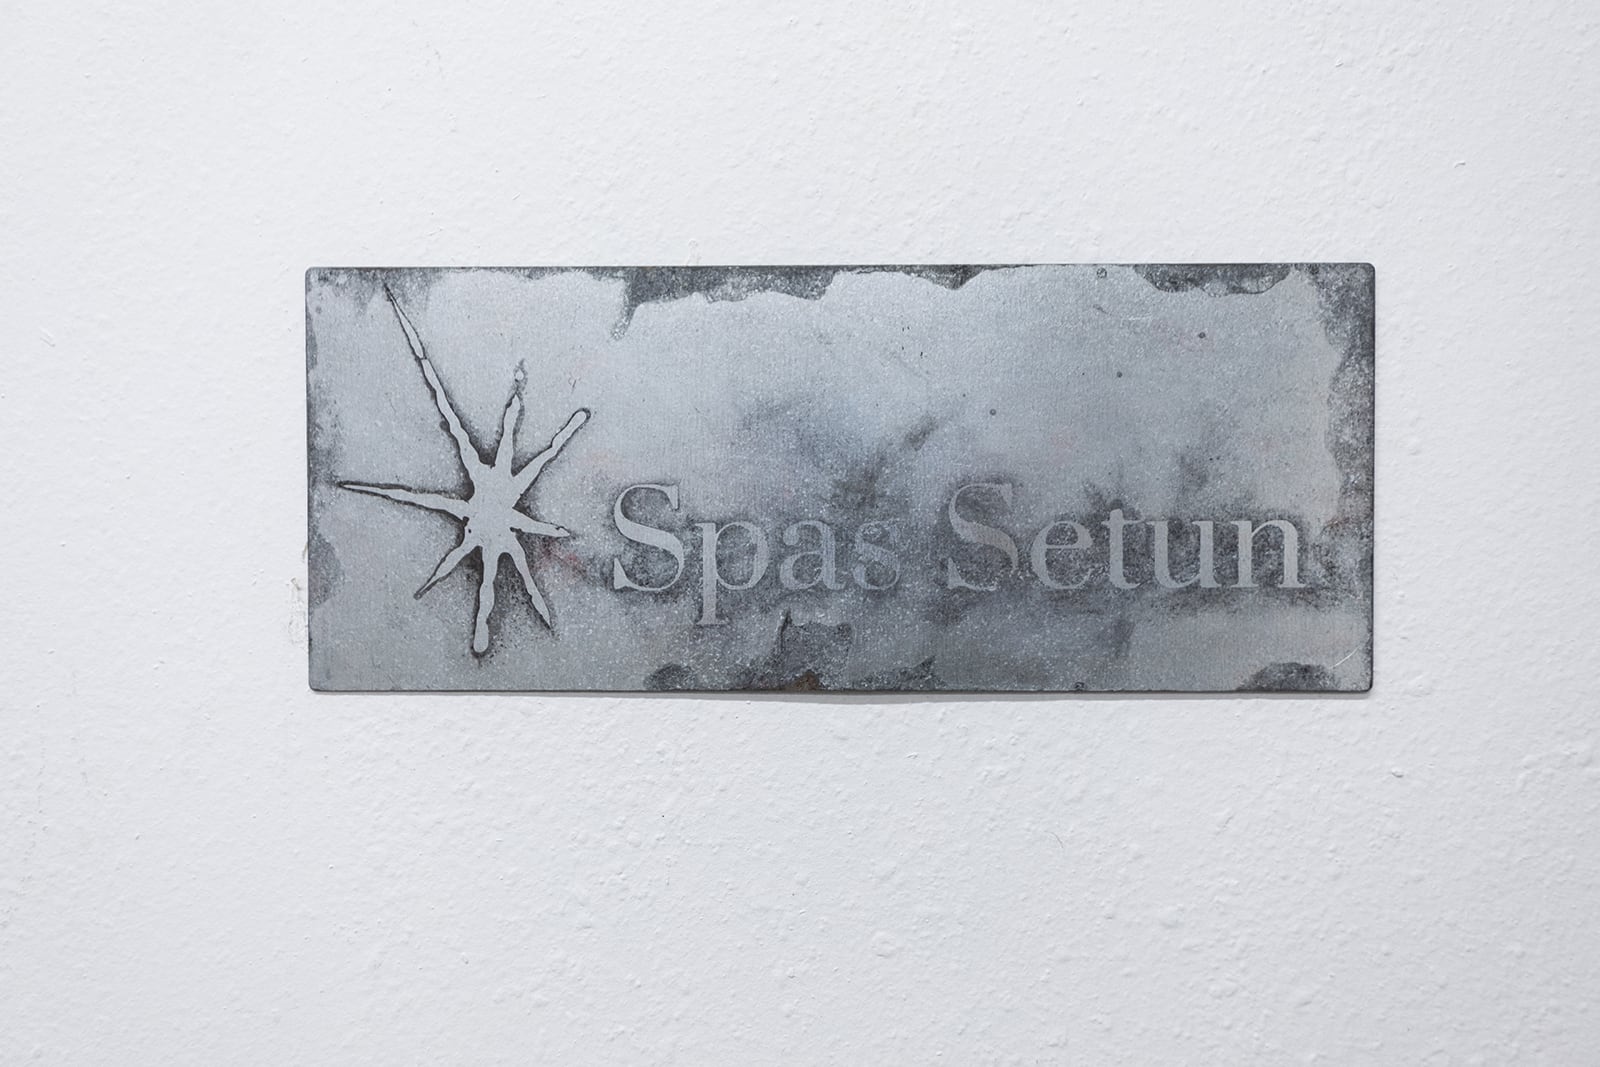 Spas Setun gallery sign, Installation view